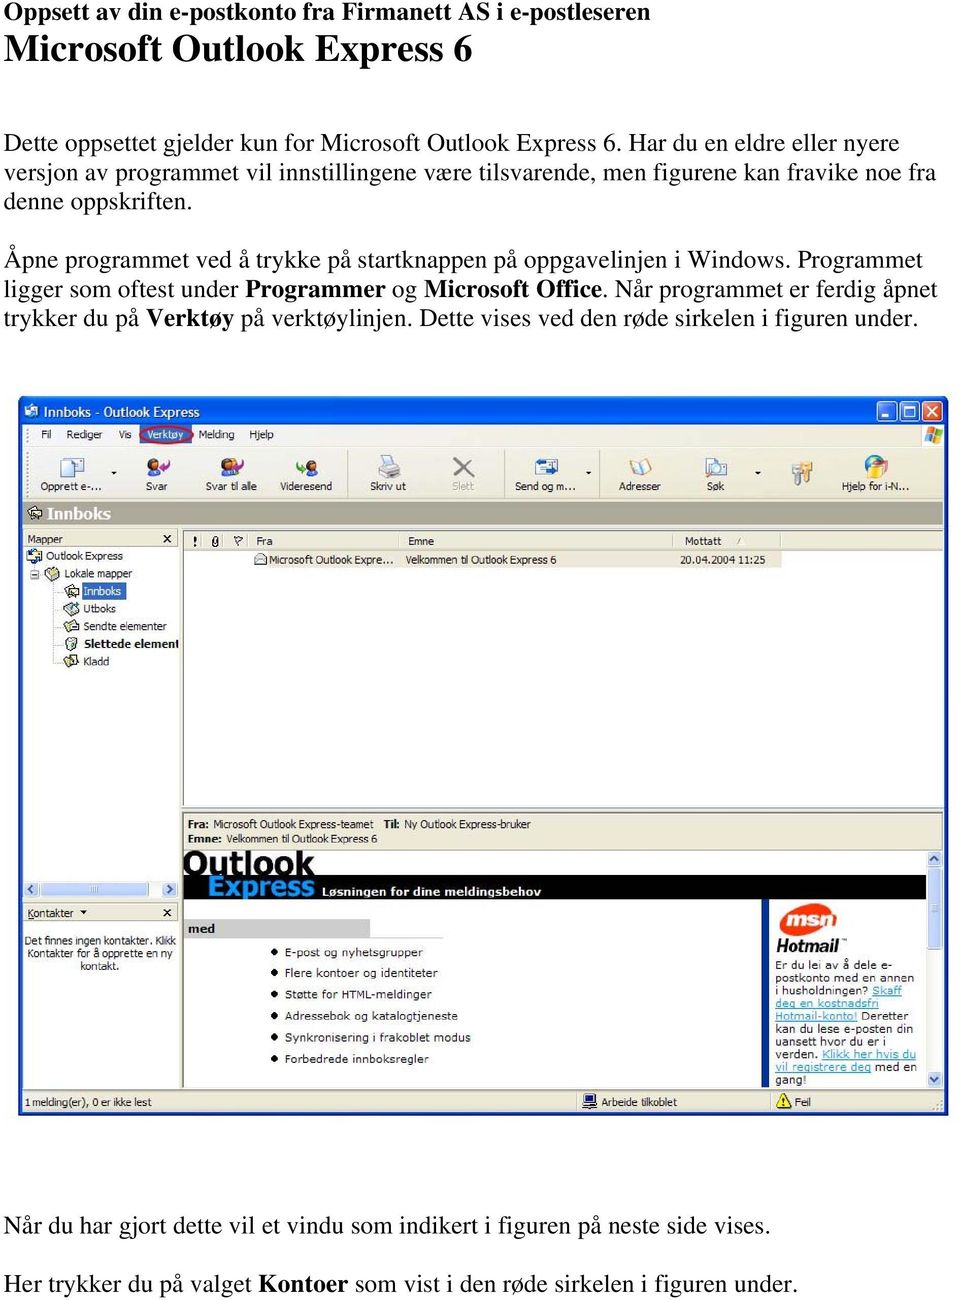 Åpne programmet ved å trykke på startknappen på oppgavelinjen i Windows. Programmet ligger som oftest under Programmer og Microsoft Office.